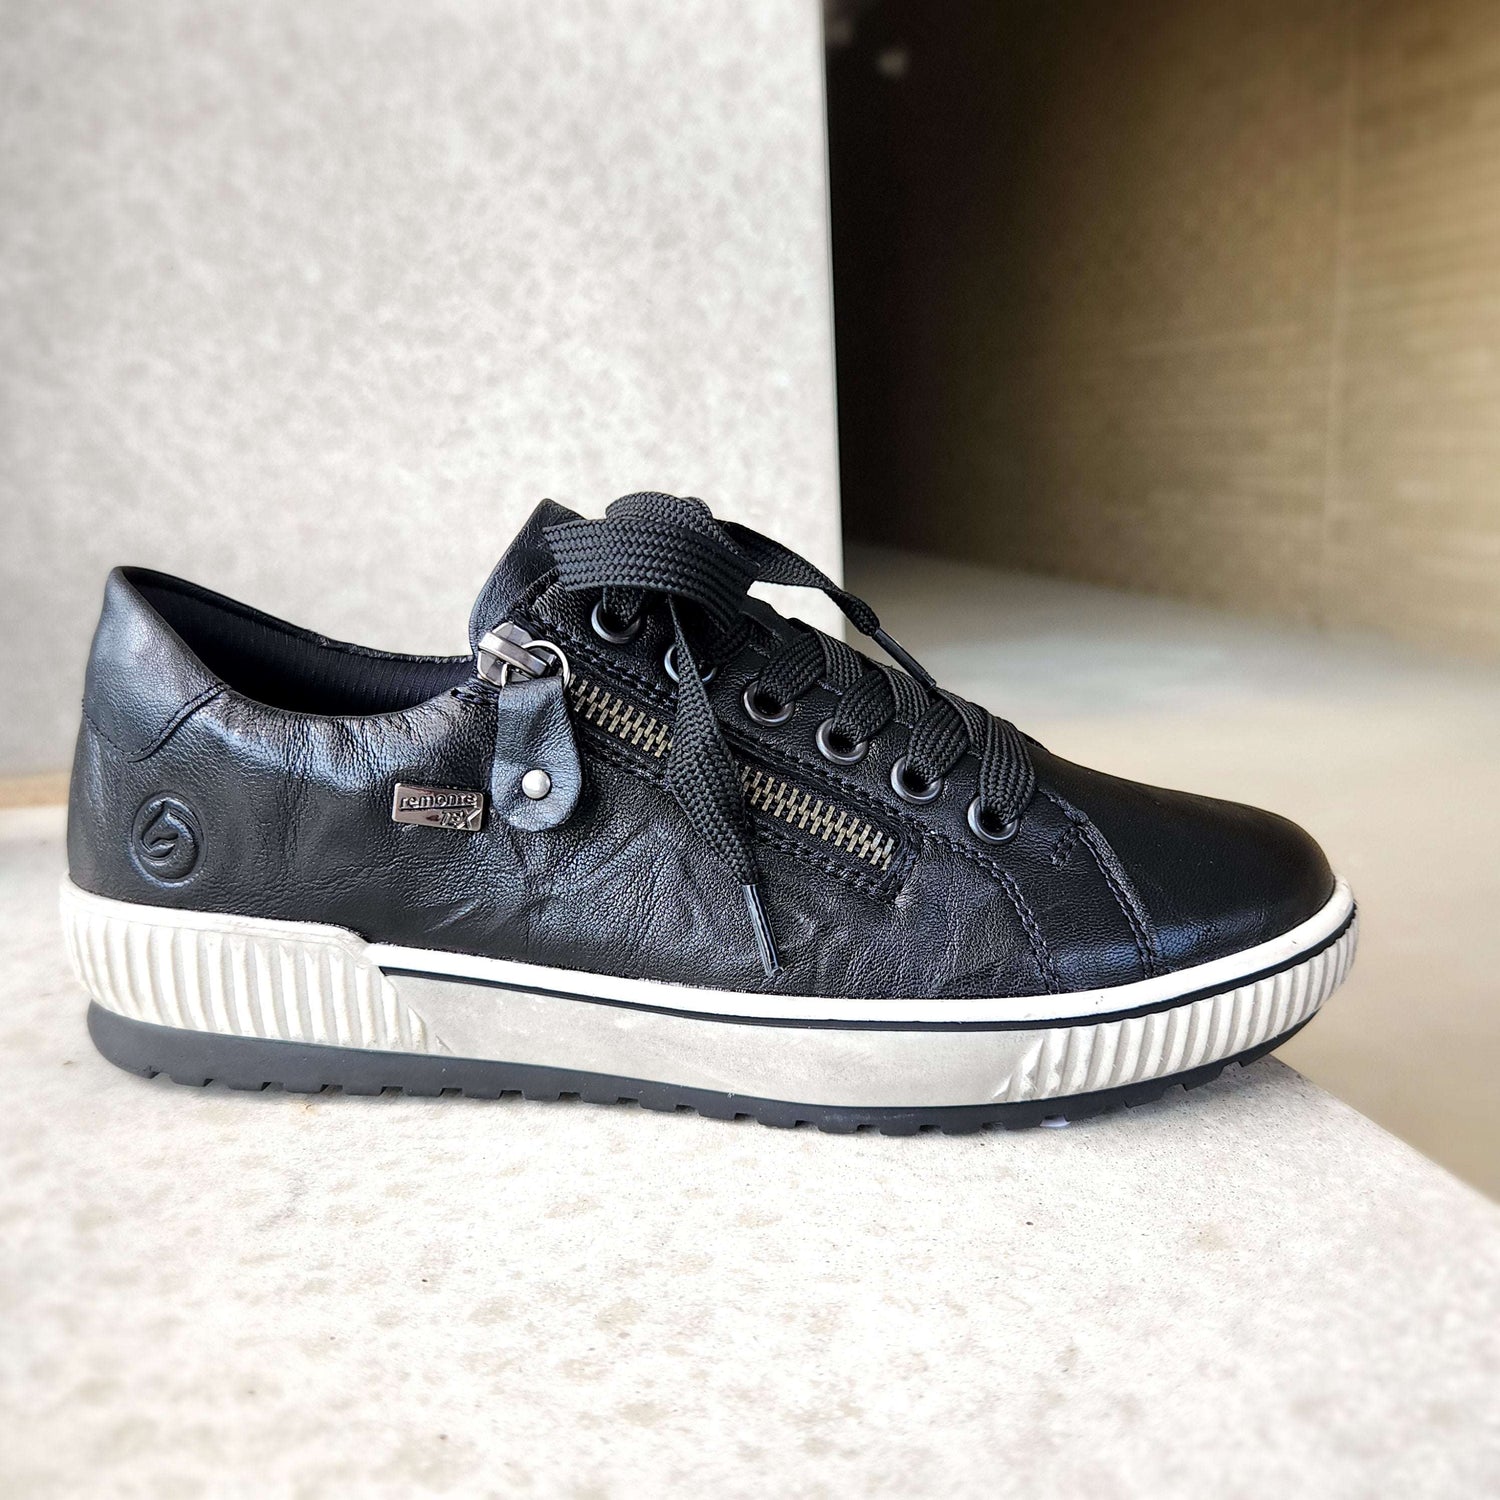 Remonte - D0700-00 Black Waterproof Sneaker, Sneakers, Remonte, Plum Bottom